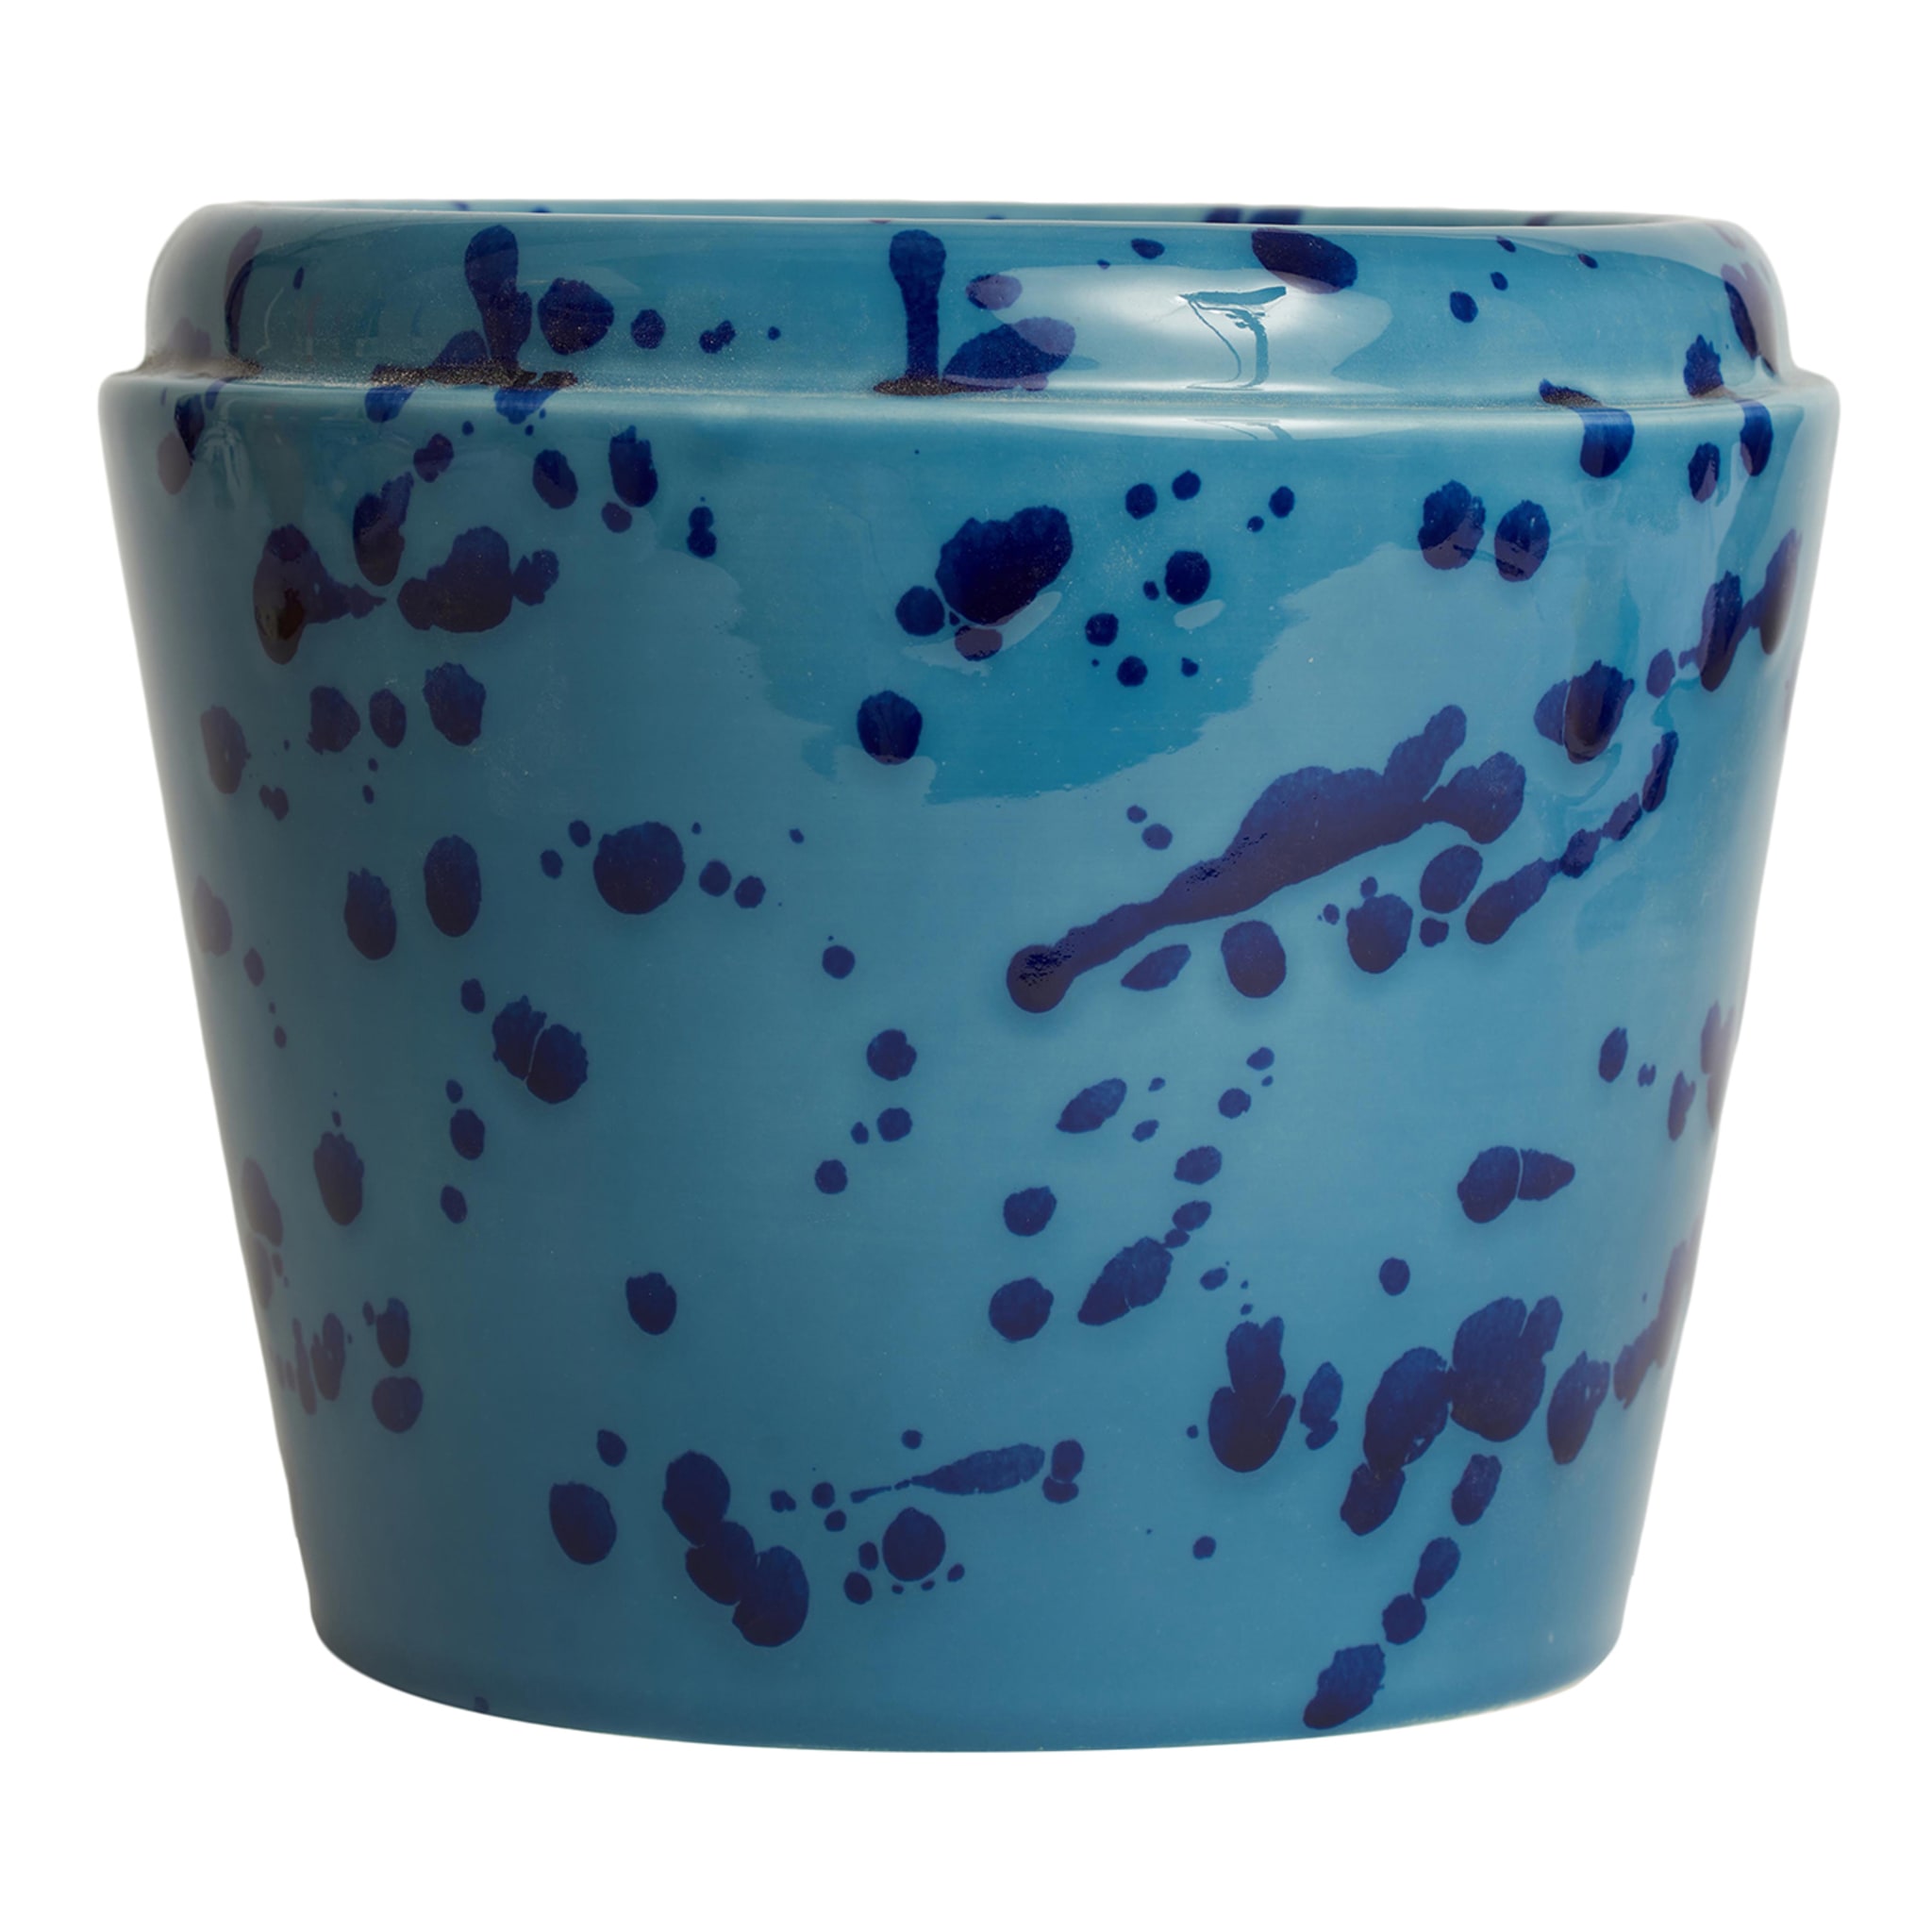 Celeste und blaue Keramik-Übertopf-Vase - Hauptansicht